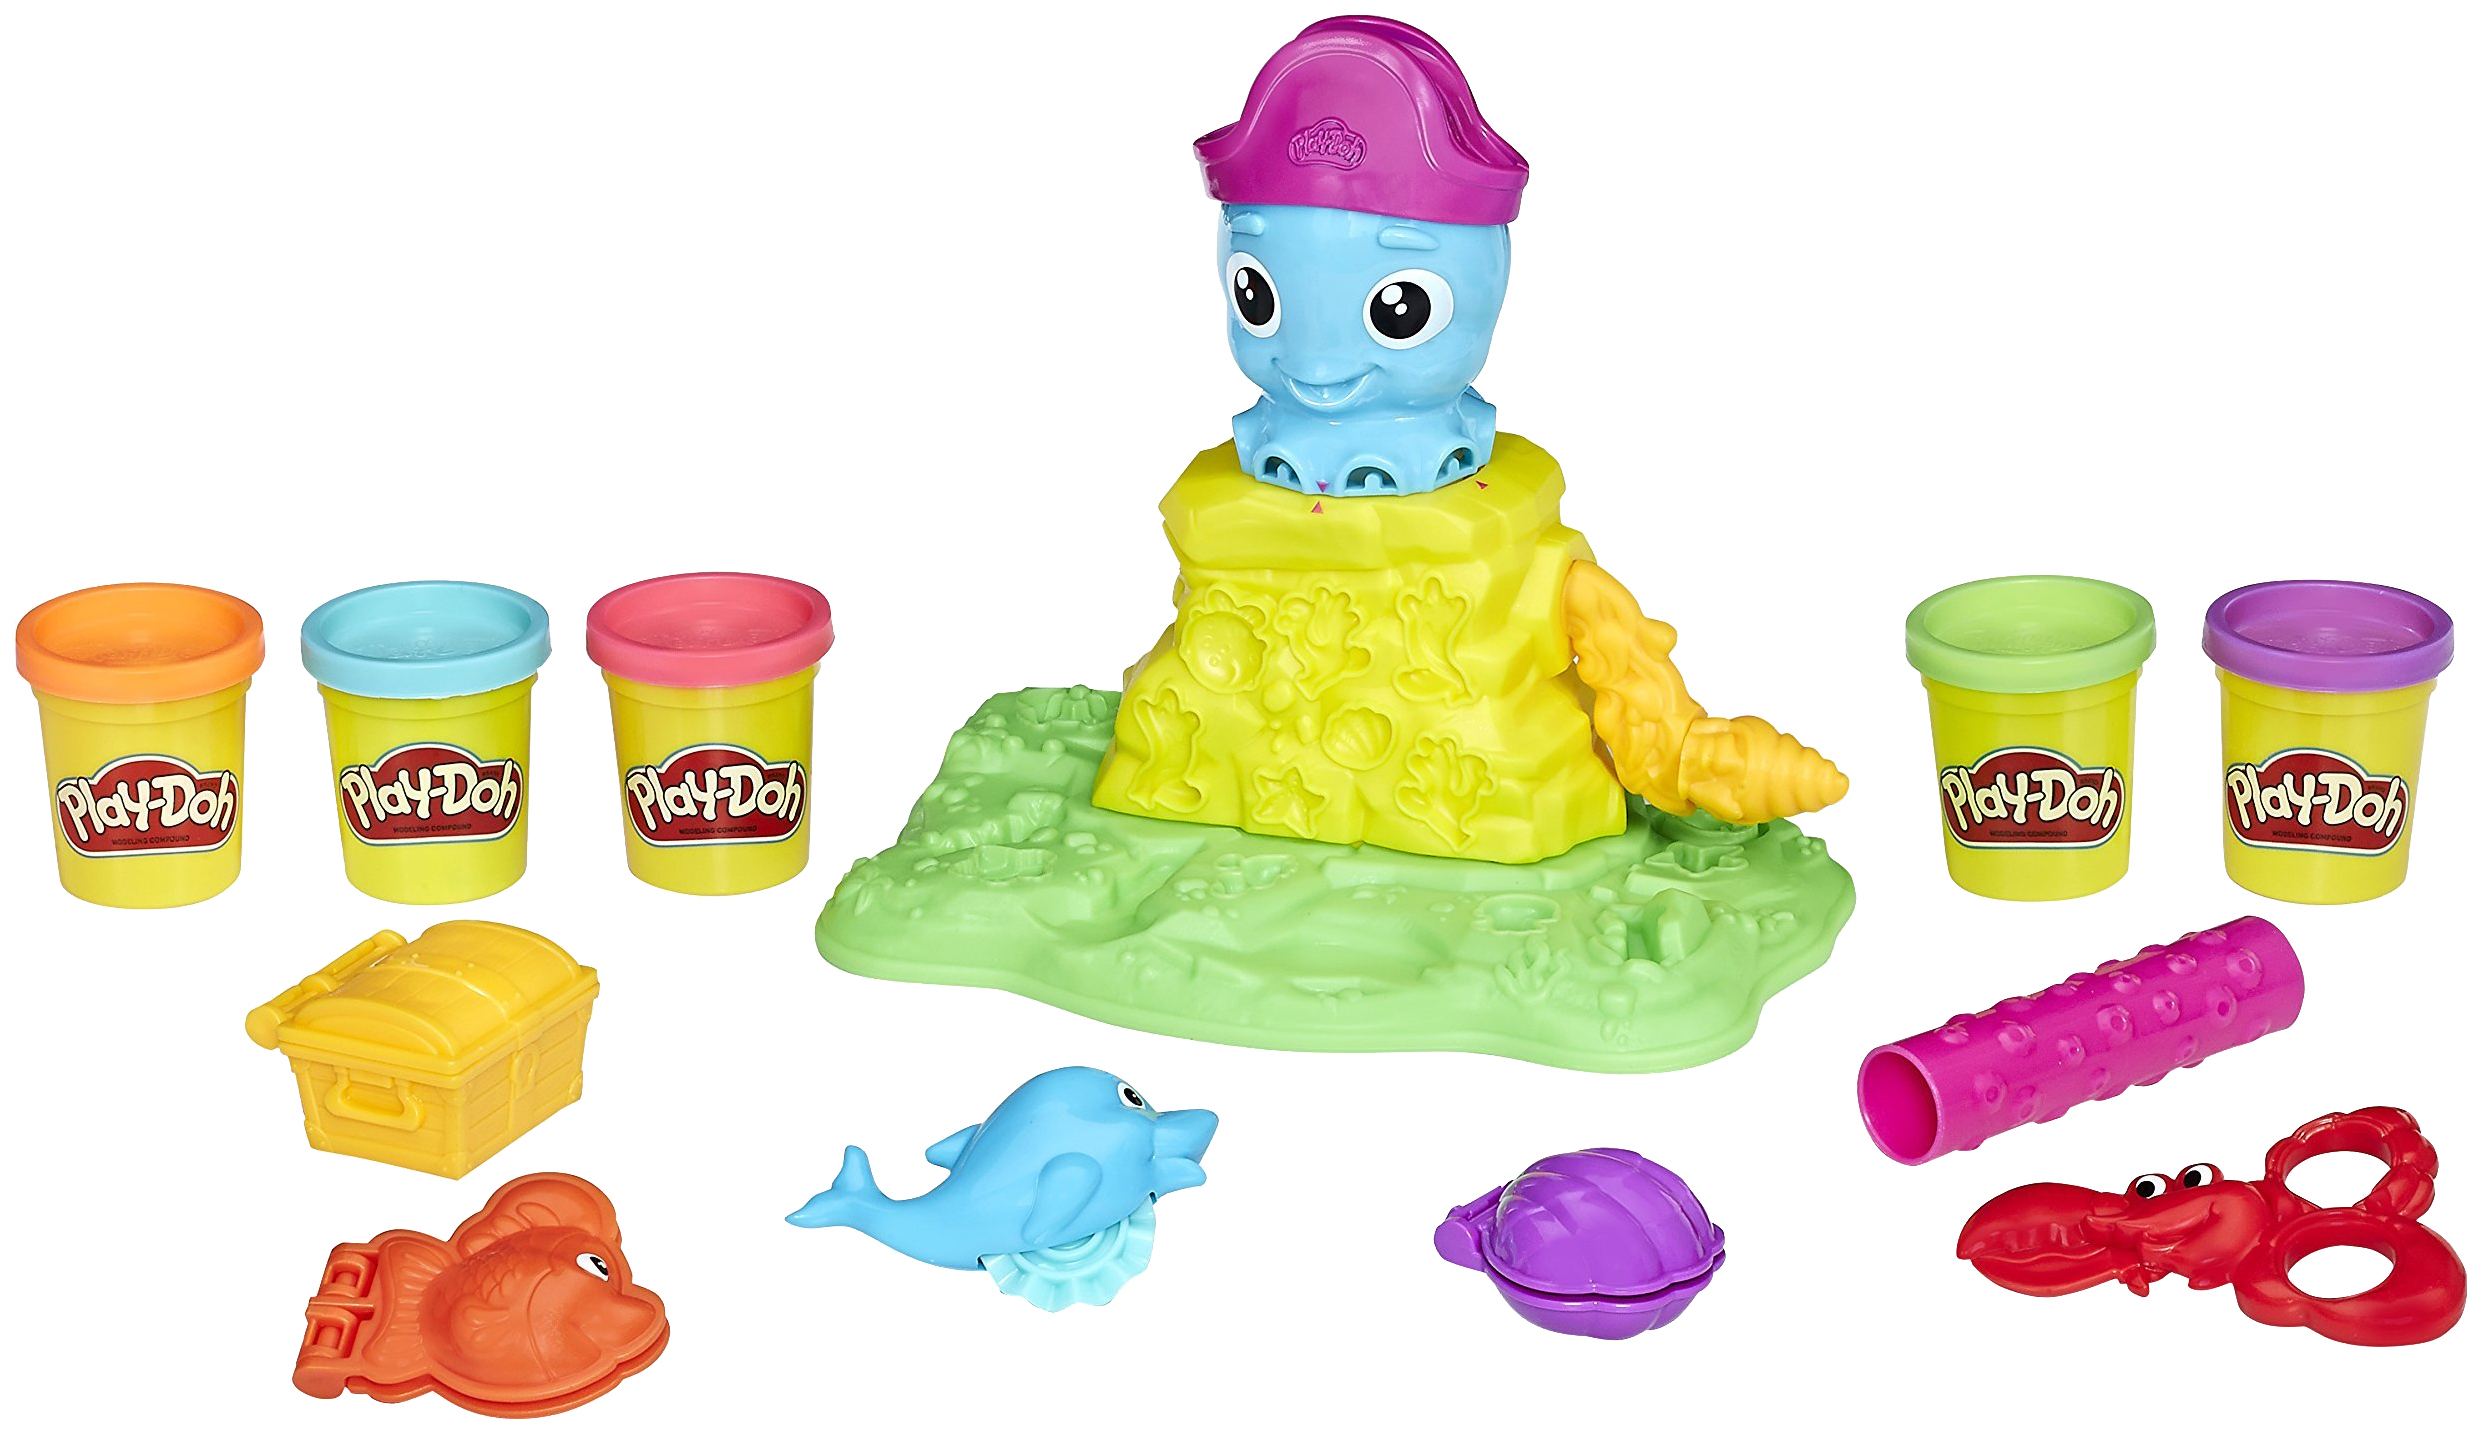 Набор для лепки игровой Play-Doh Веселый Осьминог, E0800 набор для игры с пластилином веселый новый год